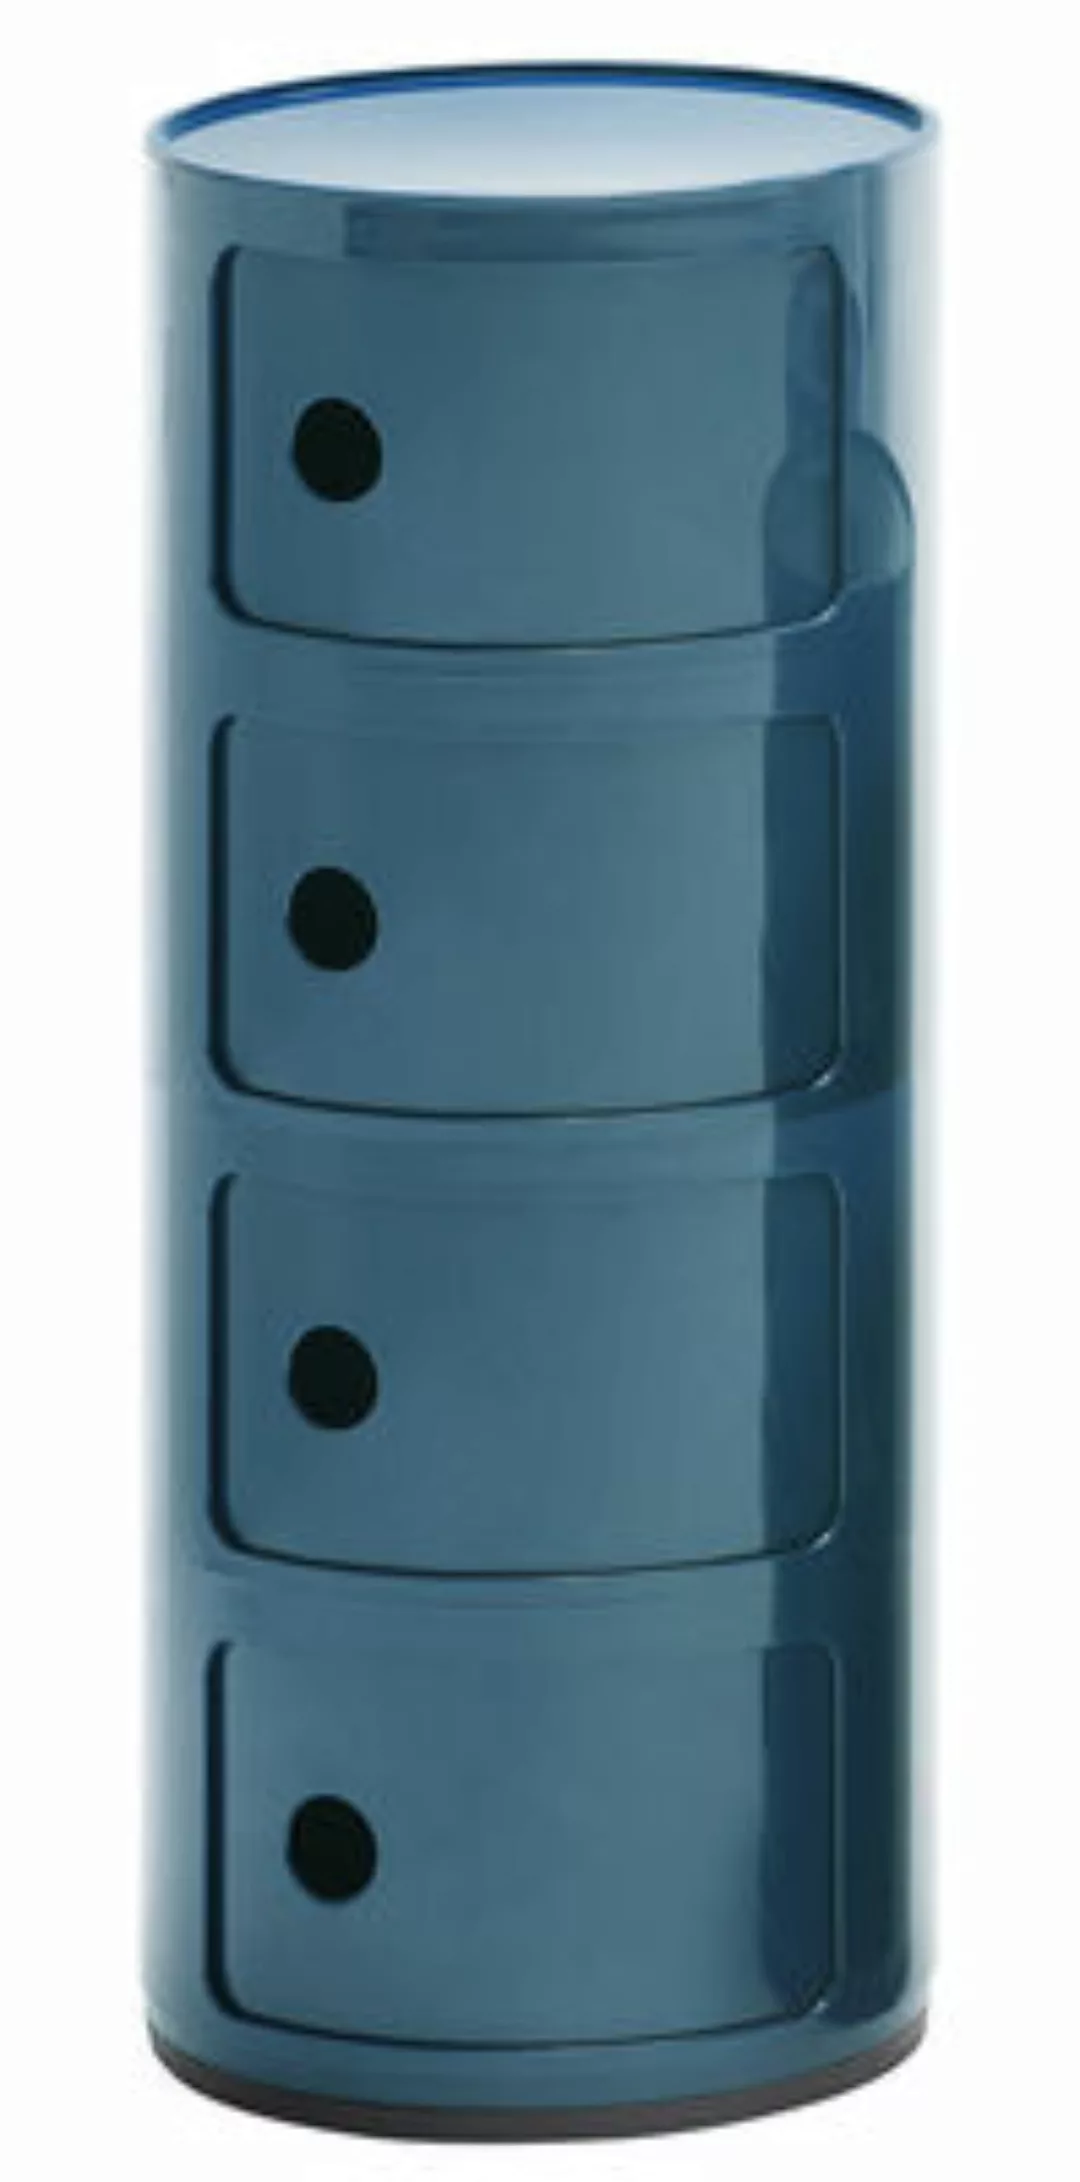 Ablage Componibili plastikmaterial blau / 4 Fächer - H 77 cm - Kartell - Bl günstig online kaufen